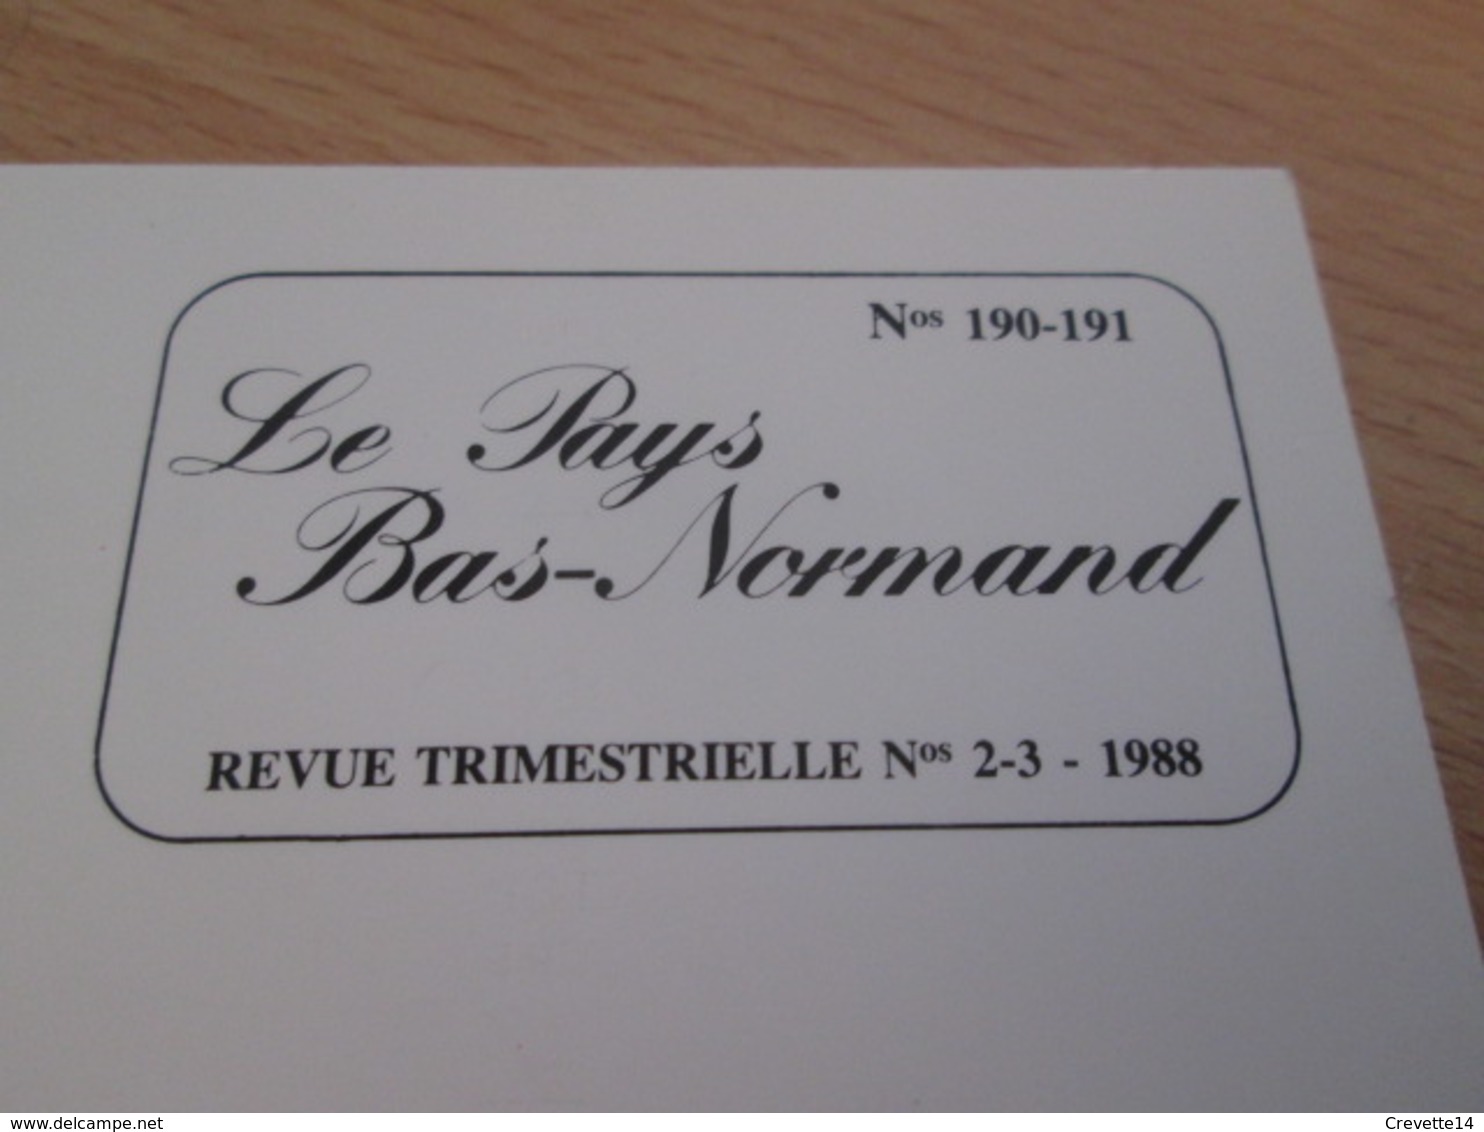 Vends Cause Décés : Le Pays Bas Normand, Revue Trimestrielle, N° 190-19, 1988,  La Ferté-Macé, Comportements Politiques - Normandie